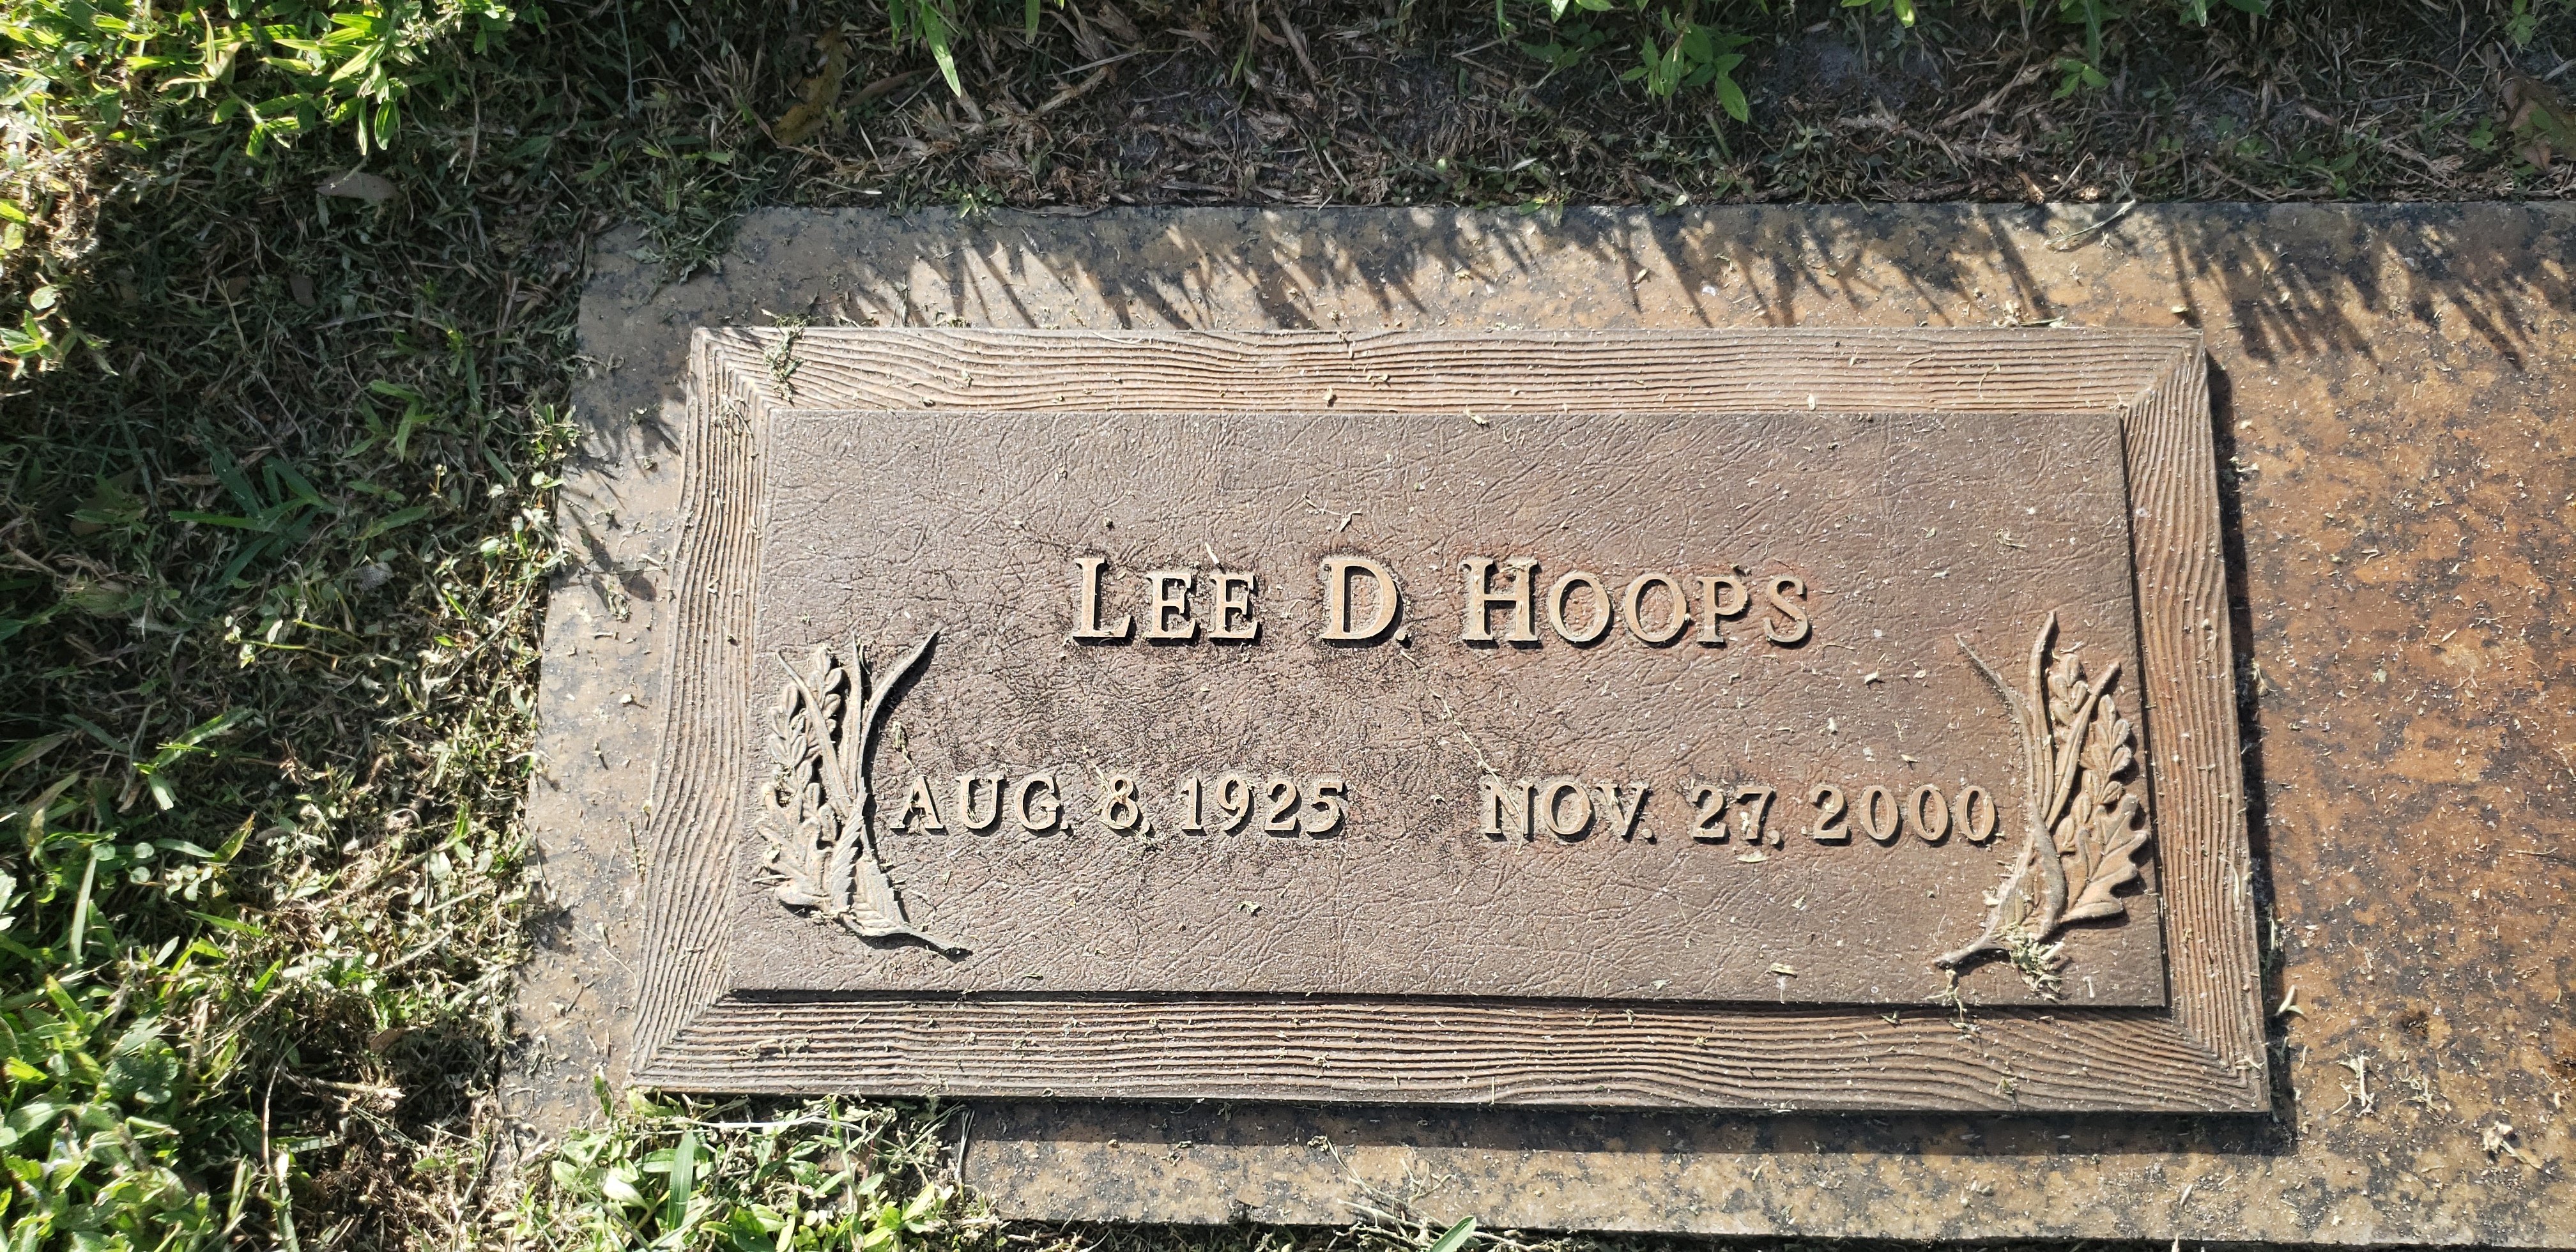 Lee D Hoops